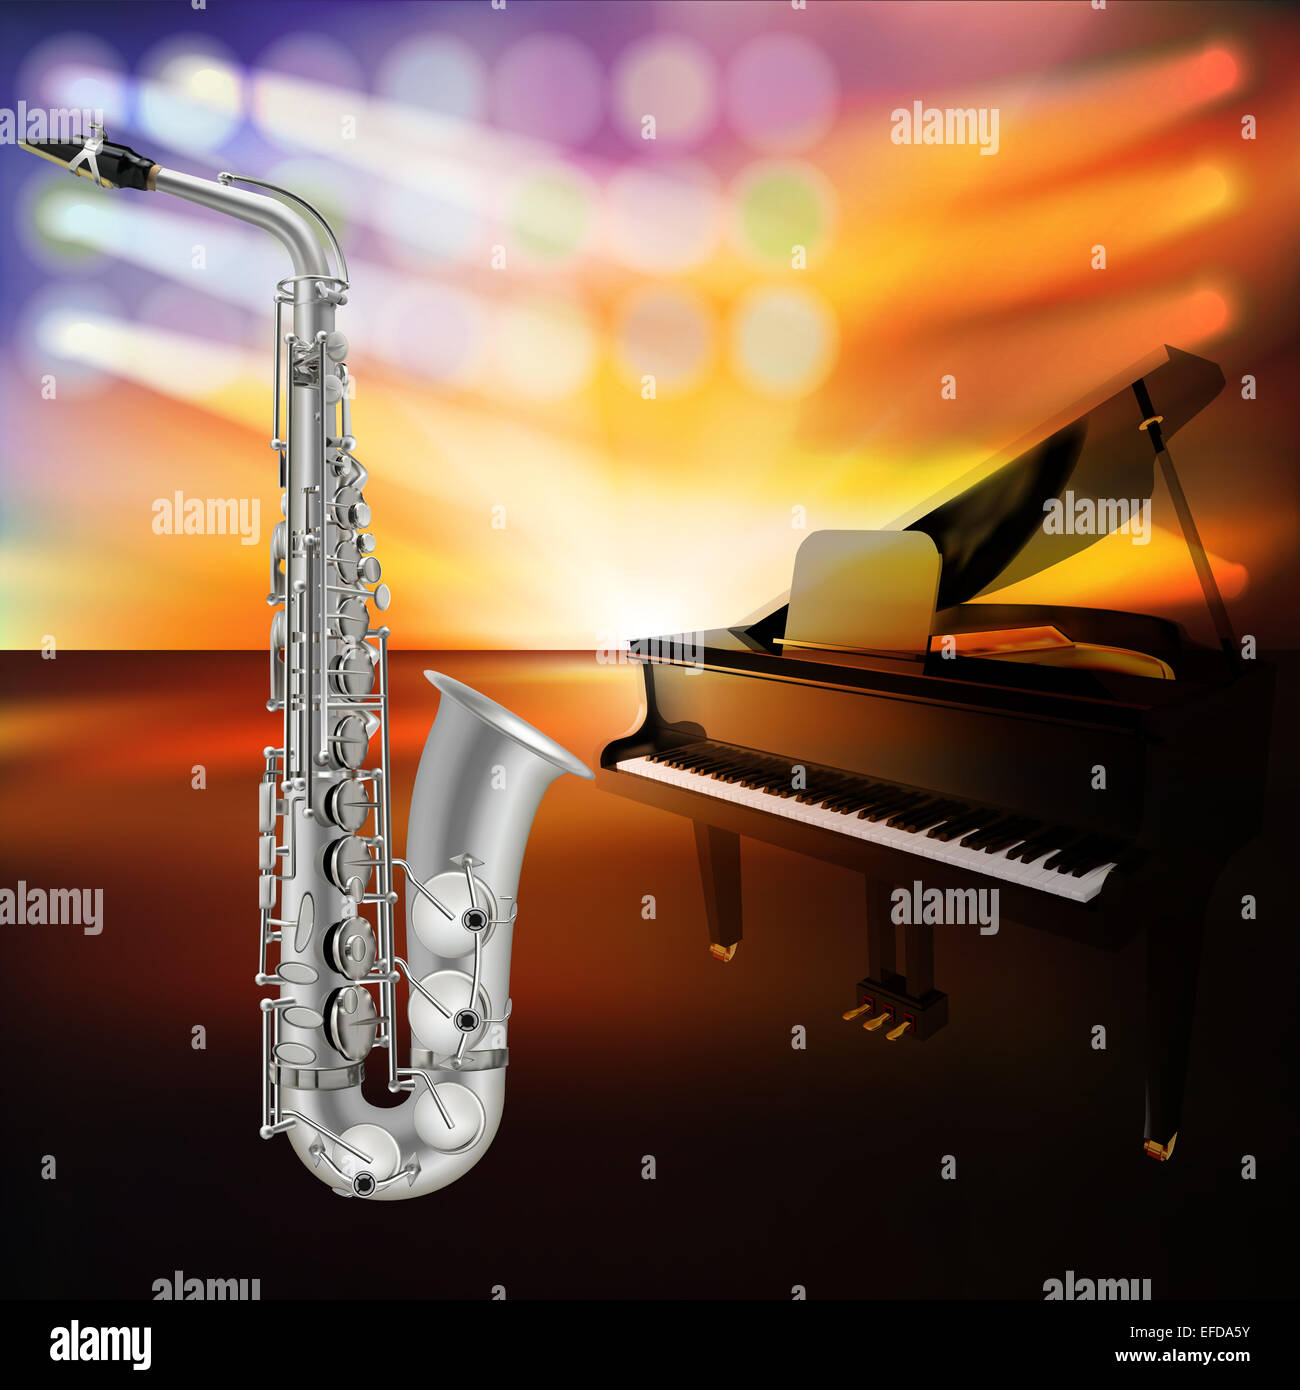 Abstract background jazz avec le saxophone et piano sur scène de musique Banque D'Images